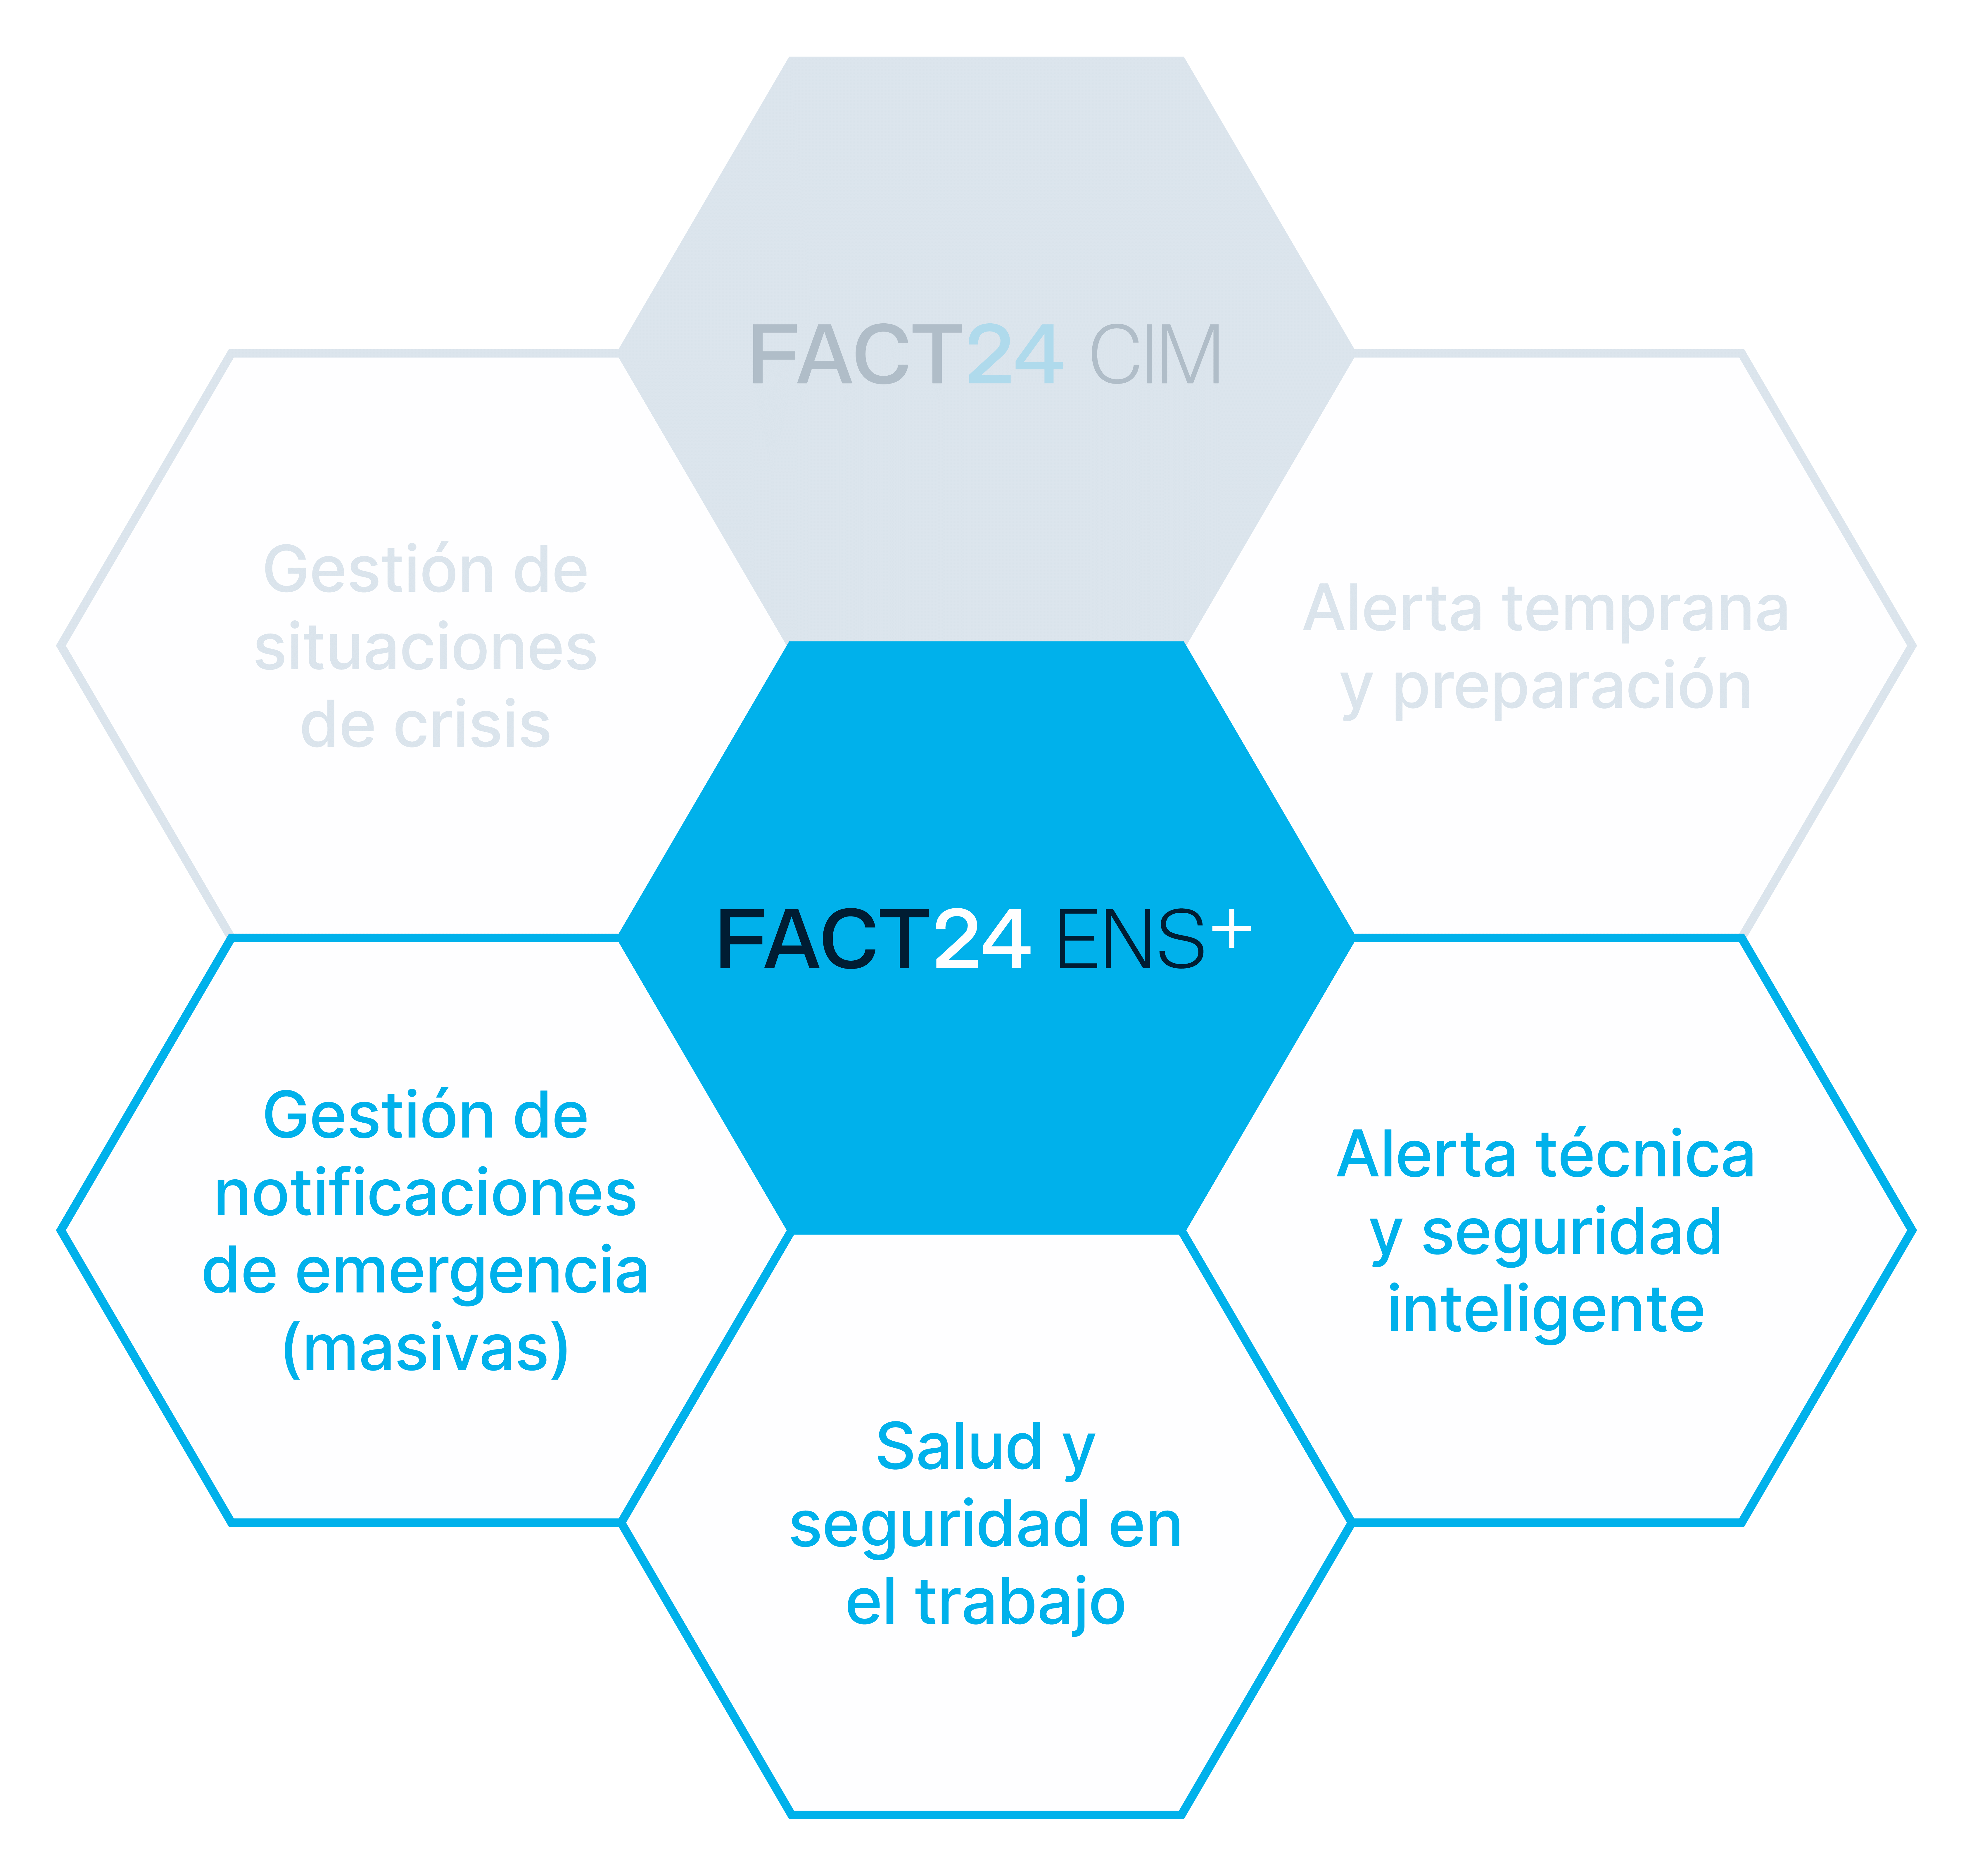 Tres FACT24 ENS+ enfoques temáticos: Salud y seguridad en el trabajo, Alerta técnica y seguridad inteligente, Gestión de notificationes de emergencia (masivas).